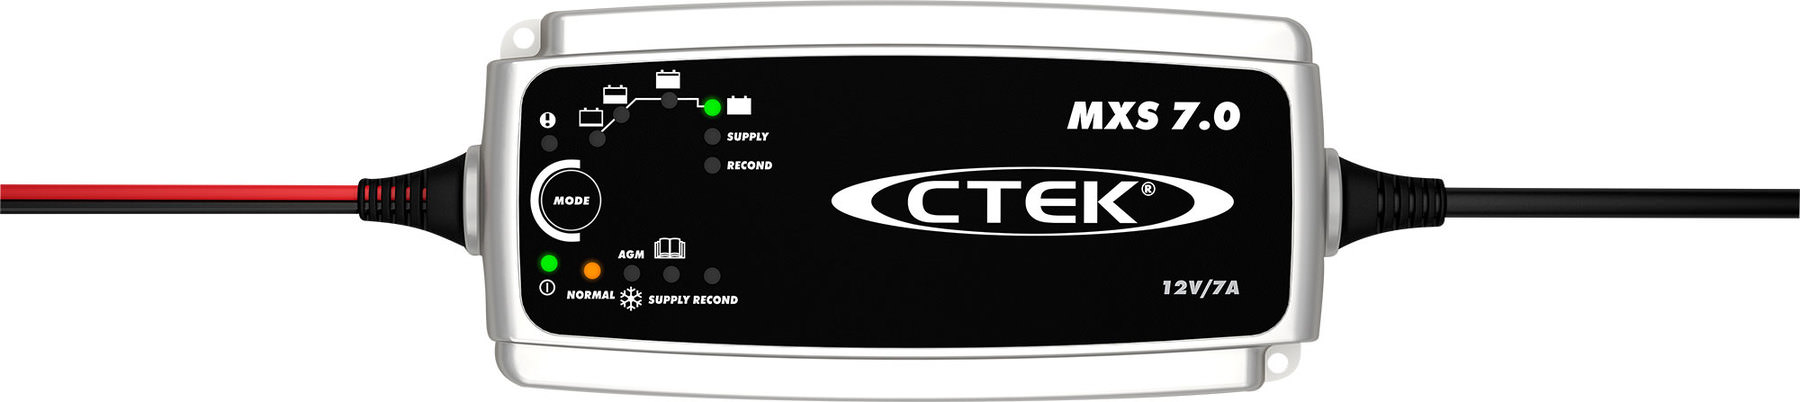 Supremery Case für CTEK MXS 7.0 Vollautomatisches Batterieladegerät Case Tasche Schutzhülle Etui mit Netztasche für weiteres Zubehör für CTEK MXS 7.0 